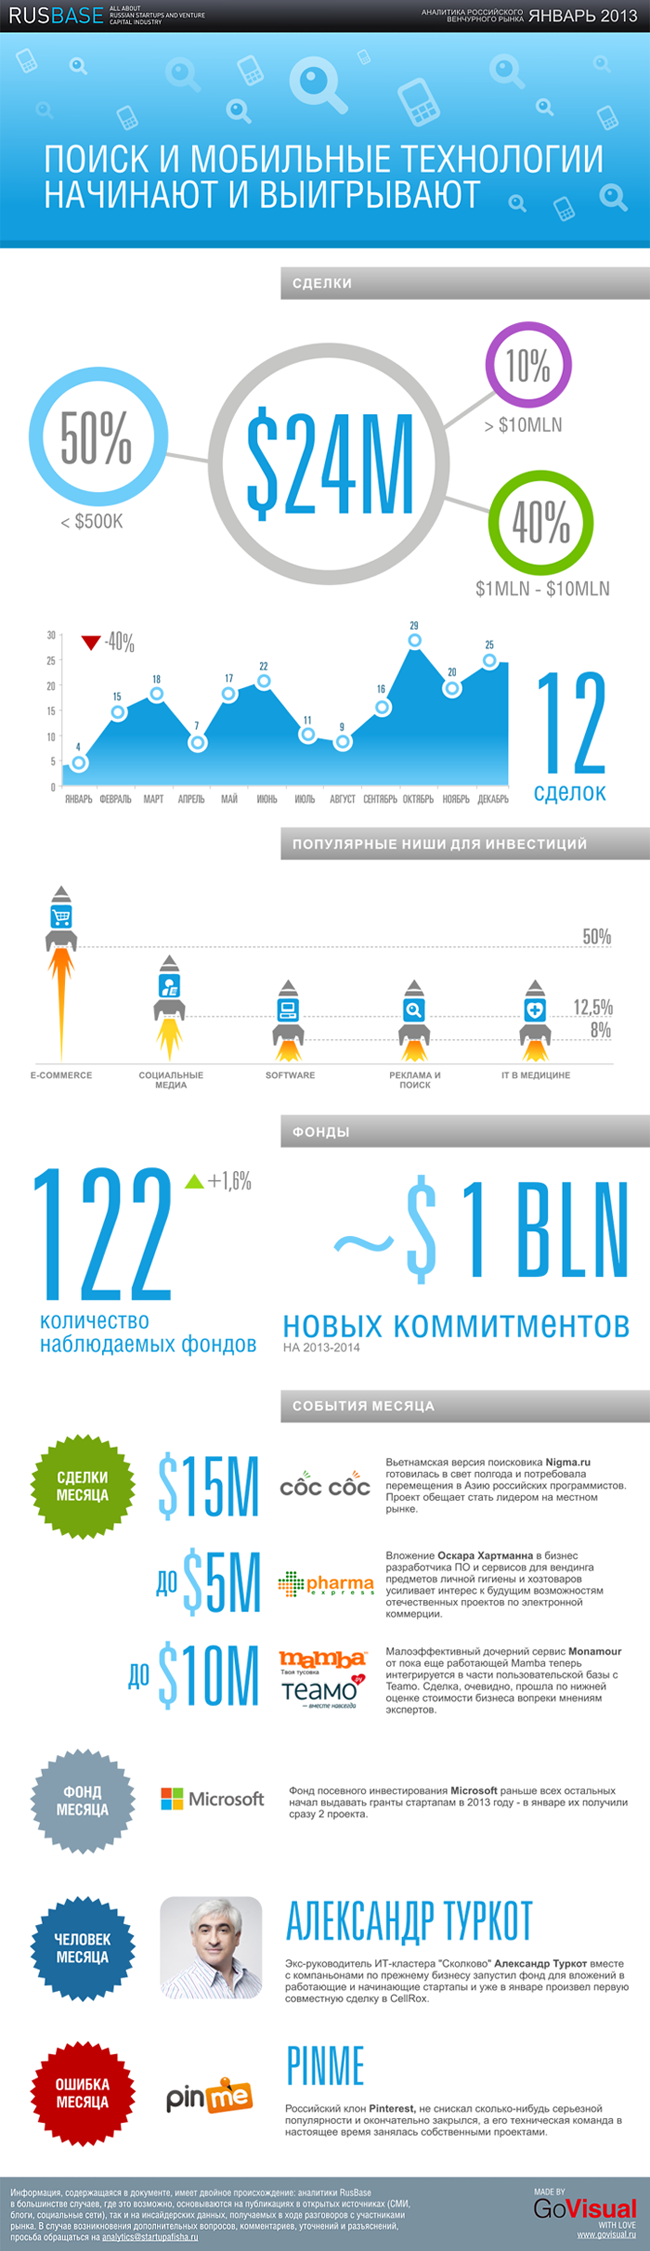 Аналитика российского венчурного рынка за январь 2013 года